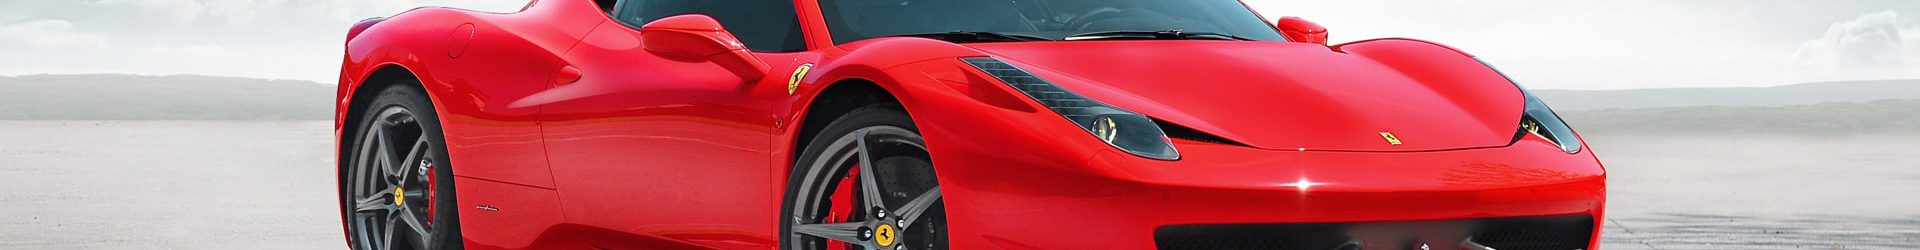 –上空烈馬– Ferrari 法拉利 California 開箱拍攝